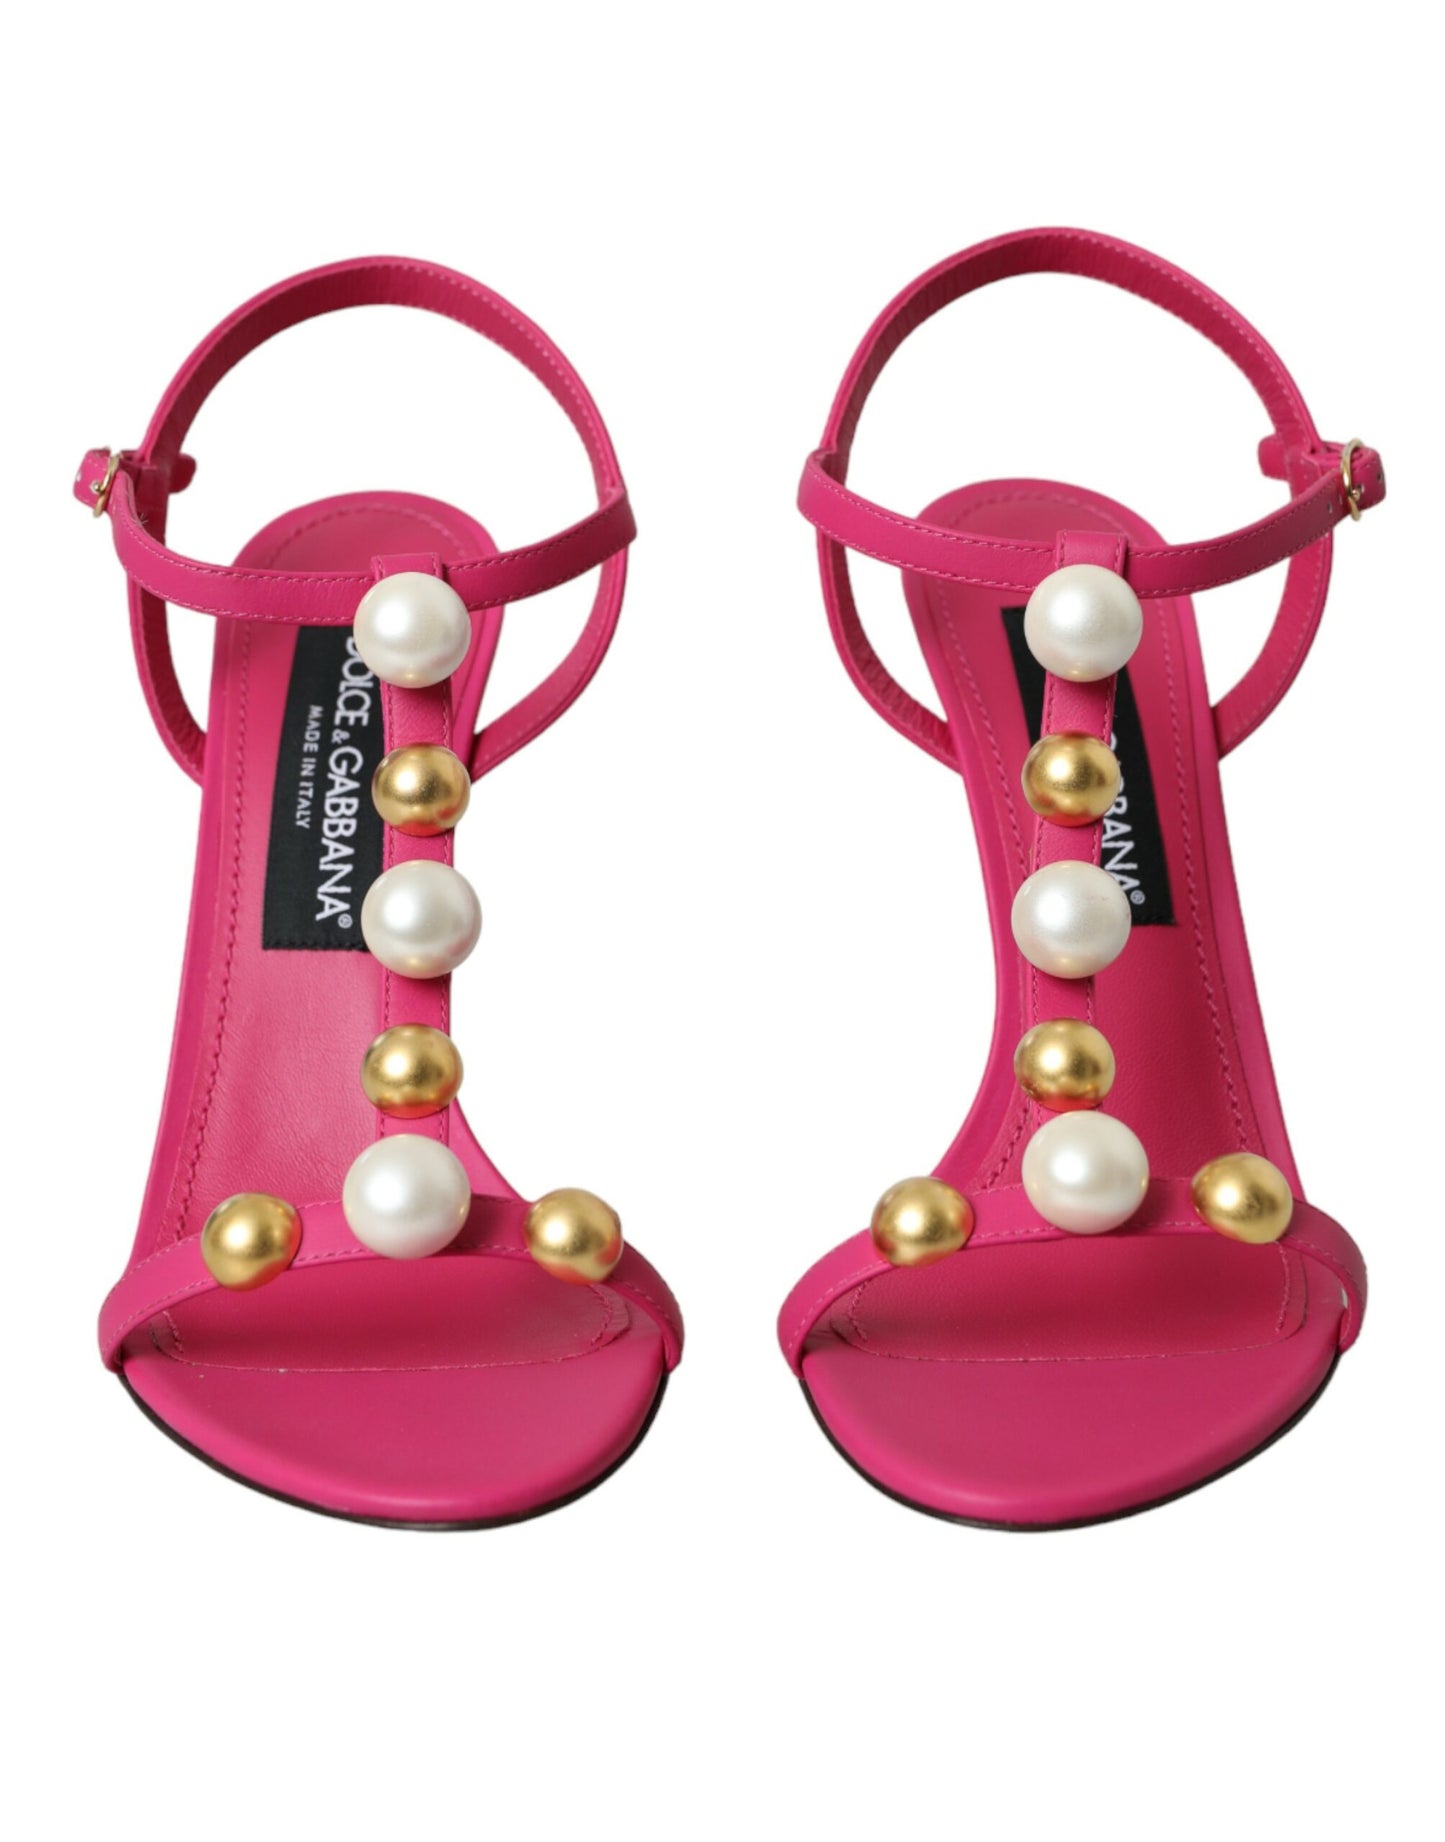 Pink Embellished Leather Sandals Heels Shoes